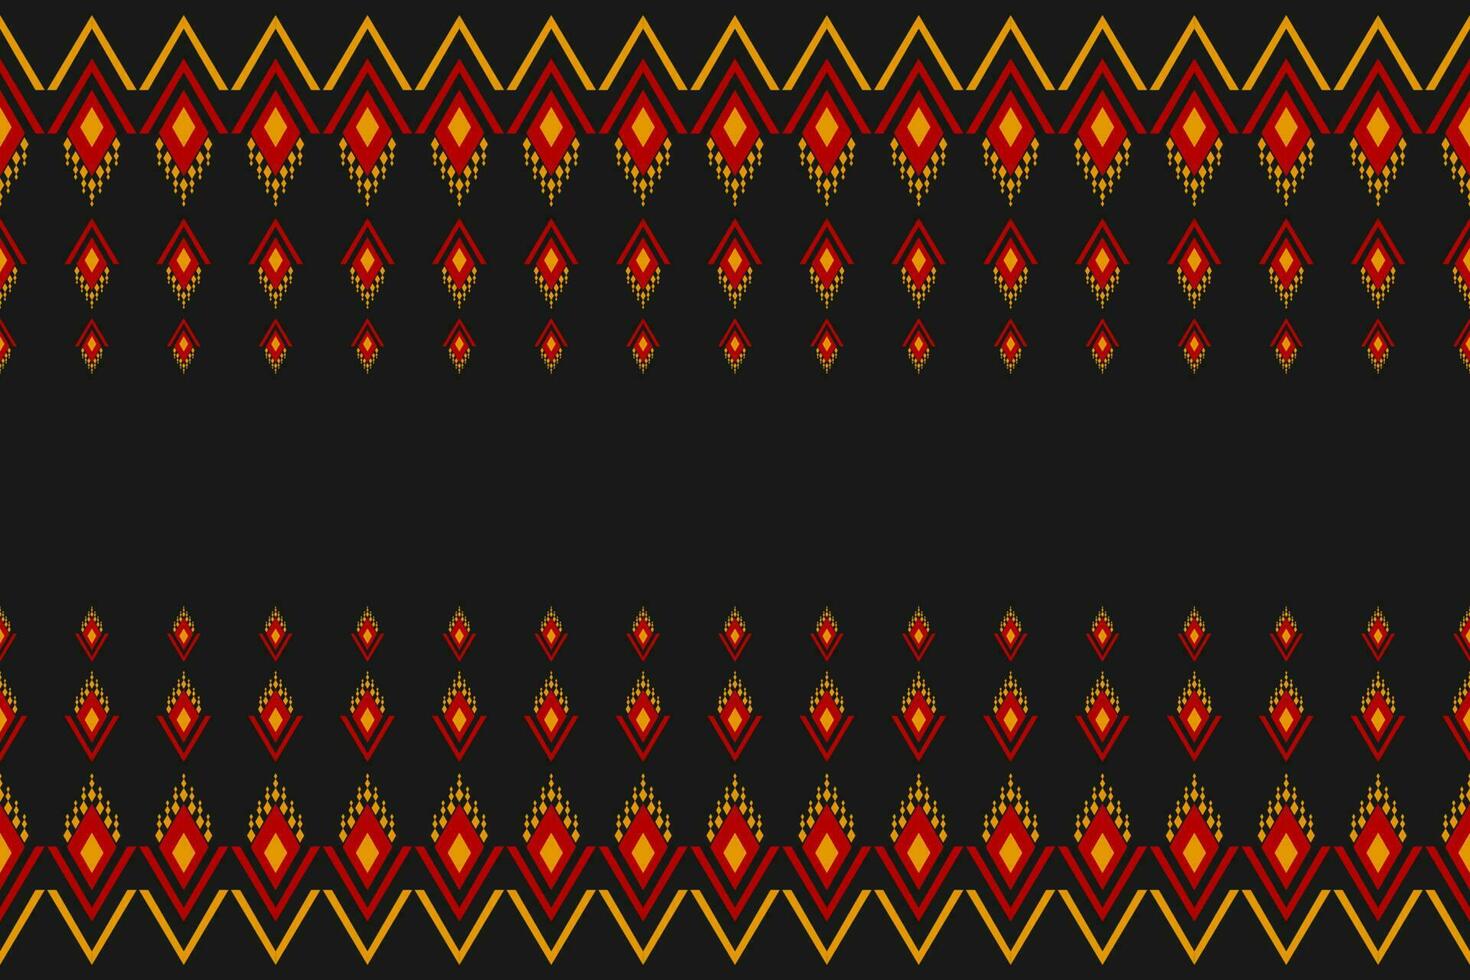 tapis motif tribal art. motif géométrique sans couture ethnique traditionnel. style américain, mexicain. vecteur